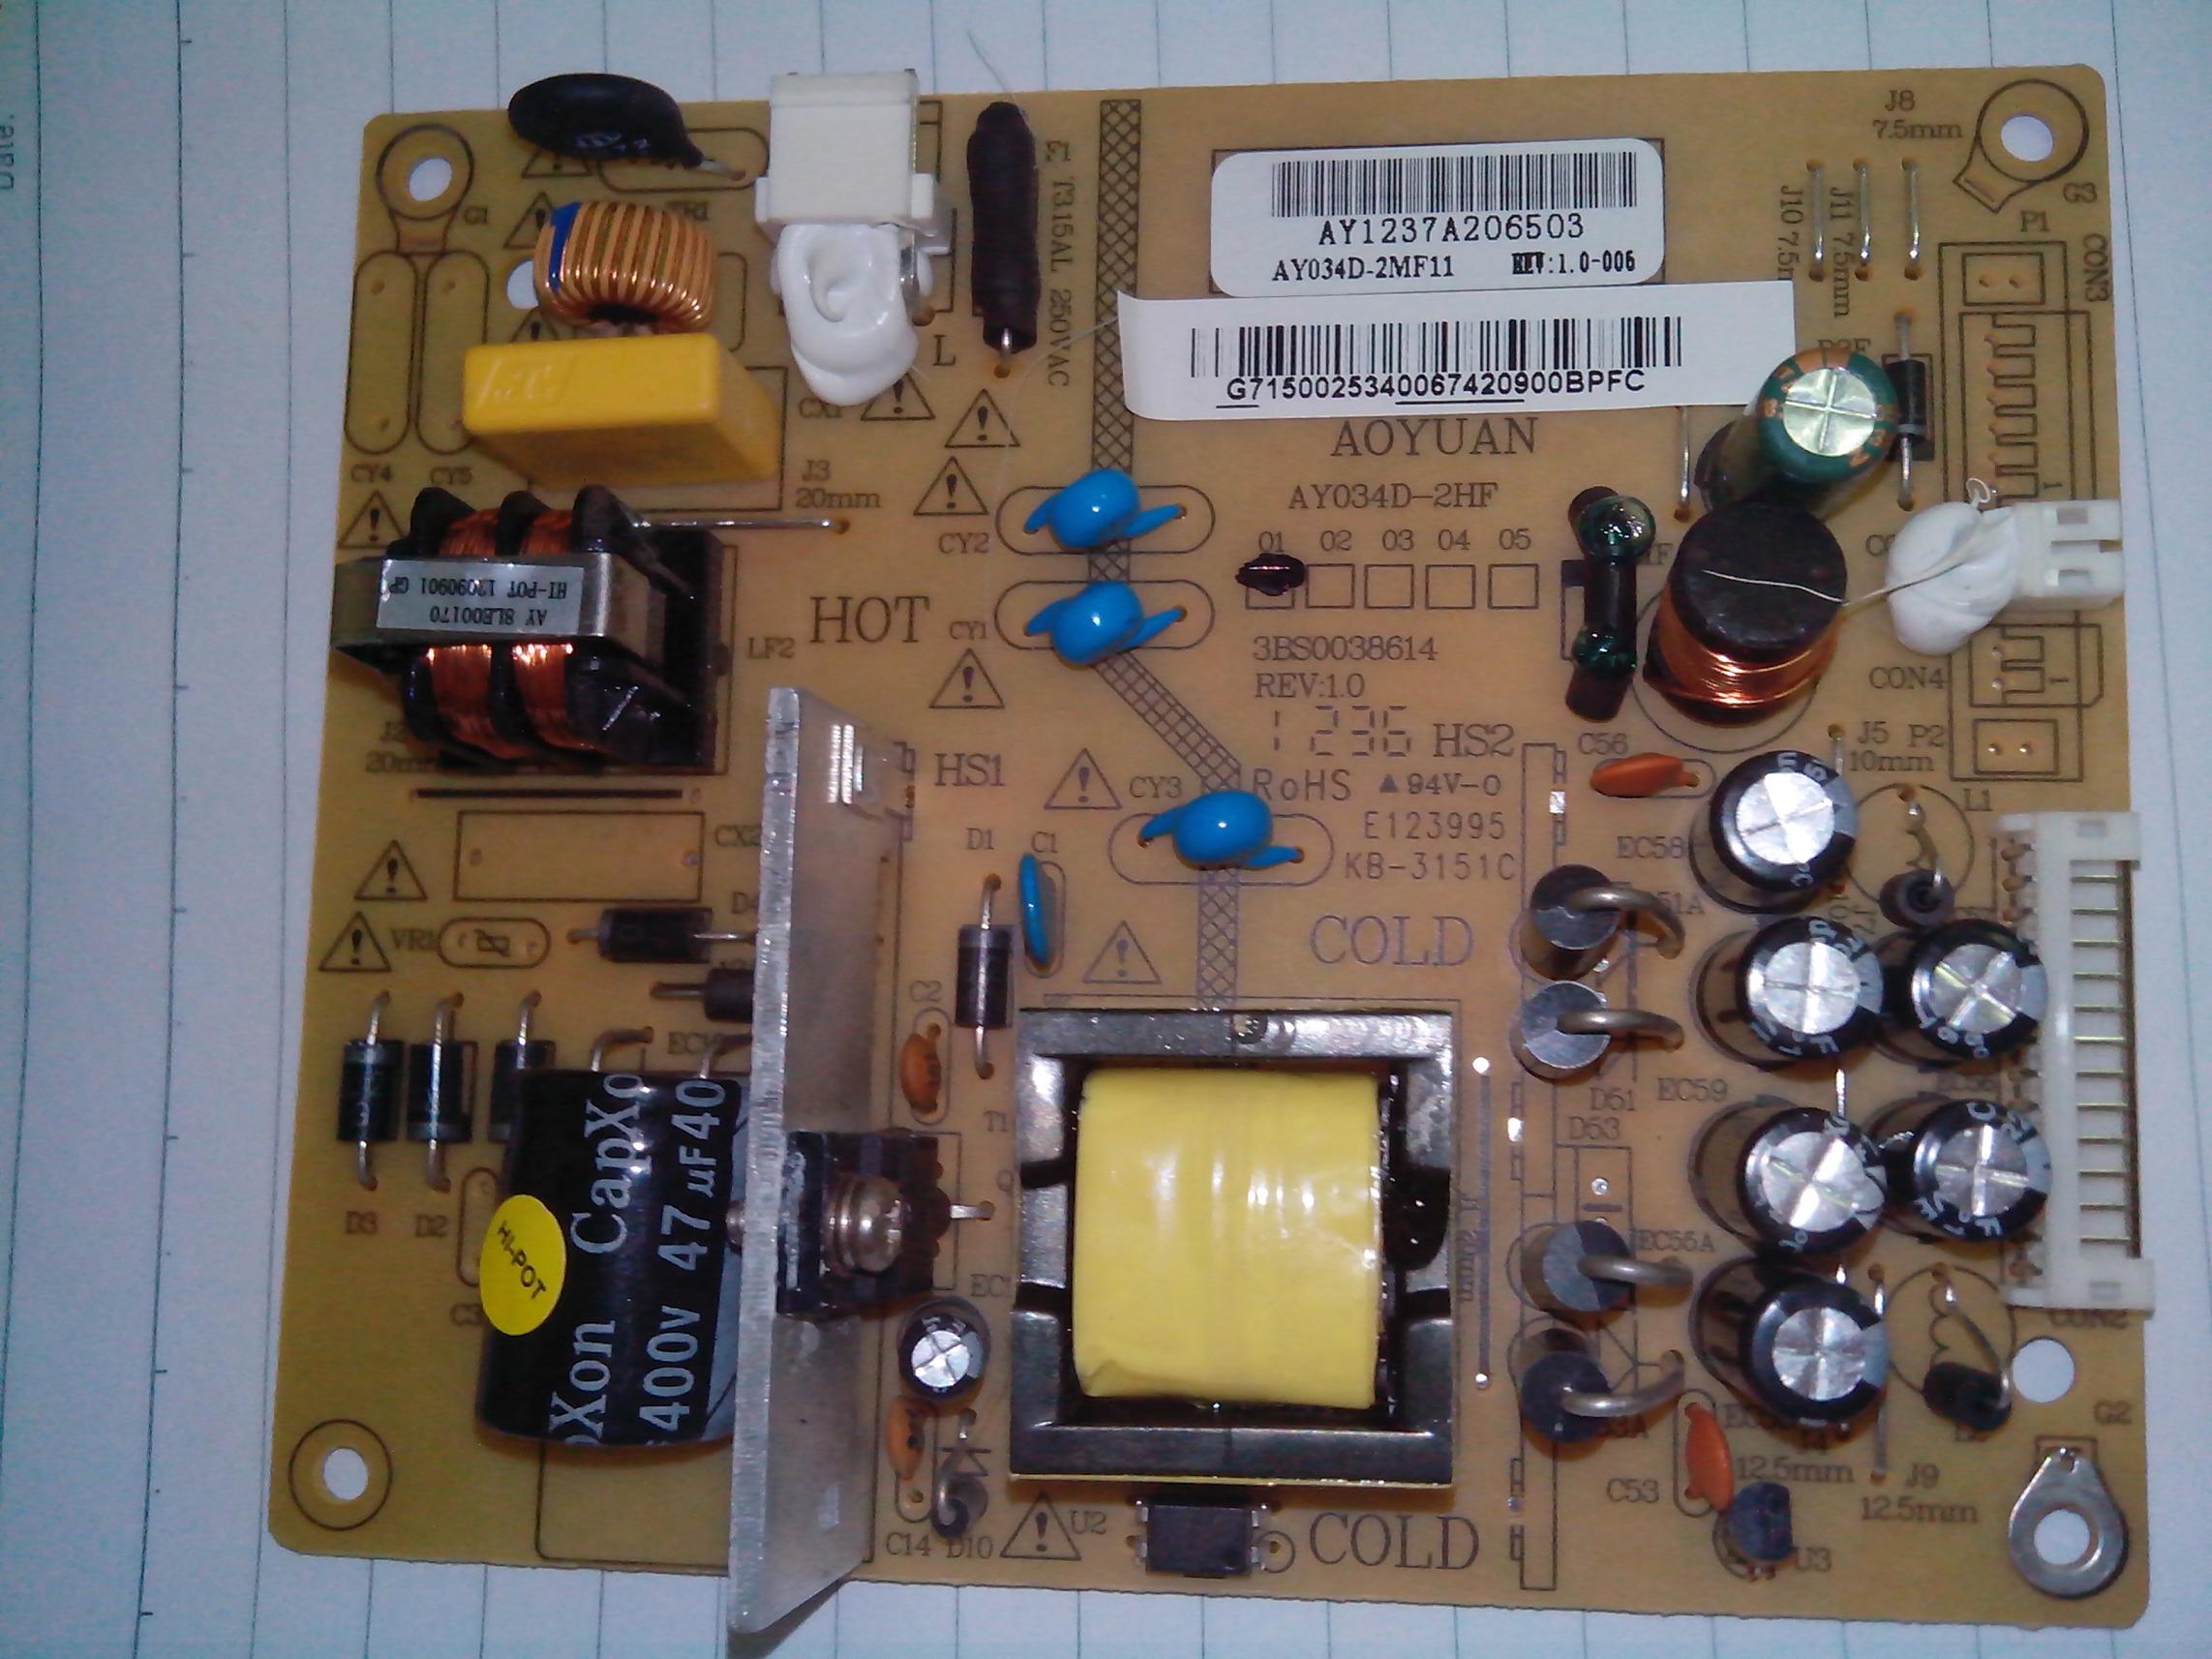 ay034d-2hf power supply board